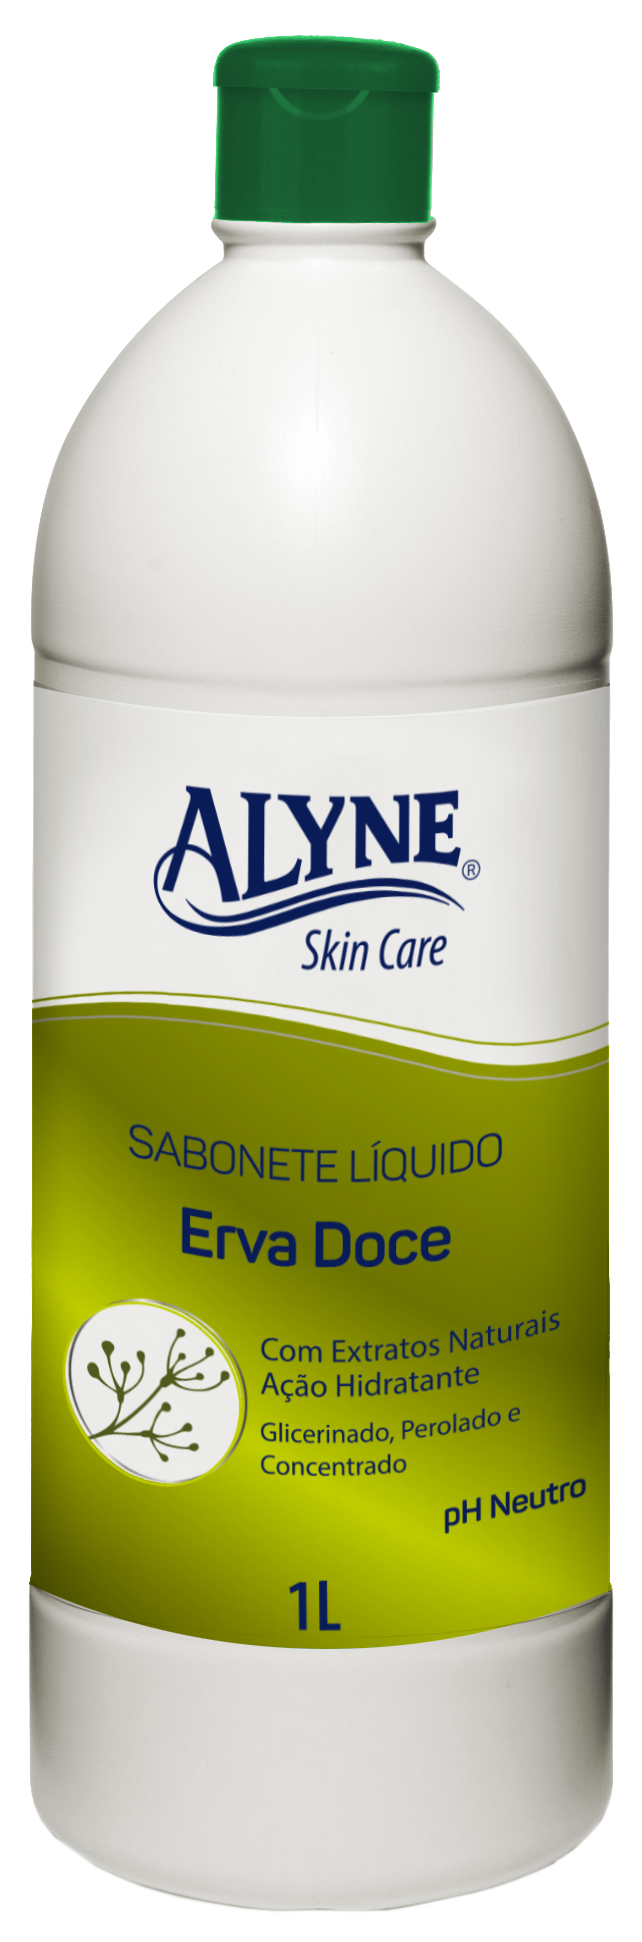 Sabonete Líquido Alyne Skin Care Erva Doce 1L